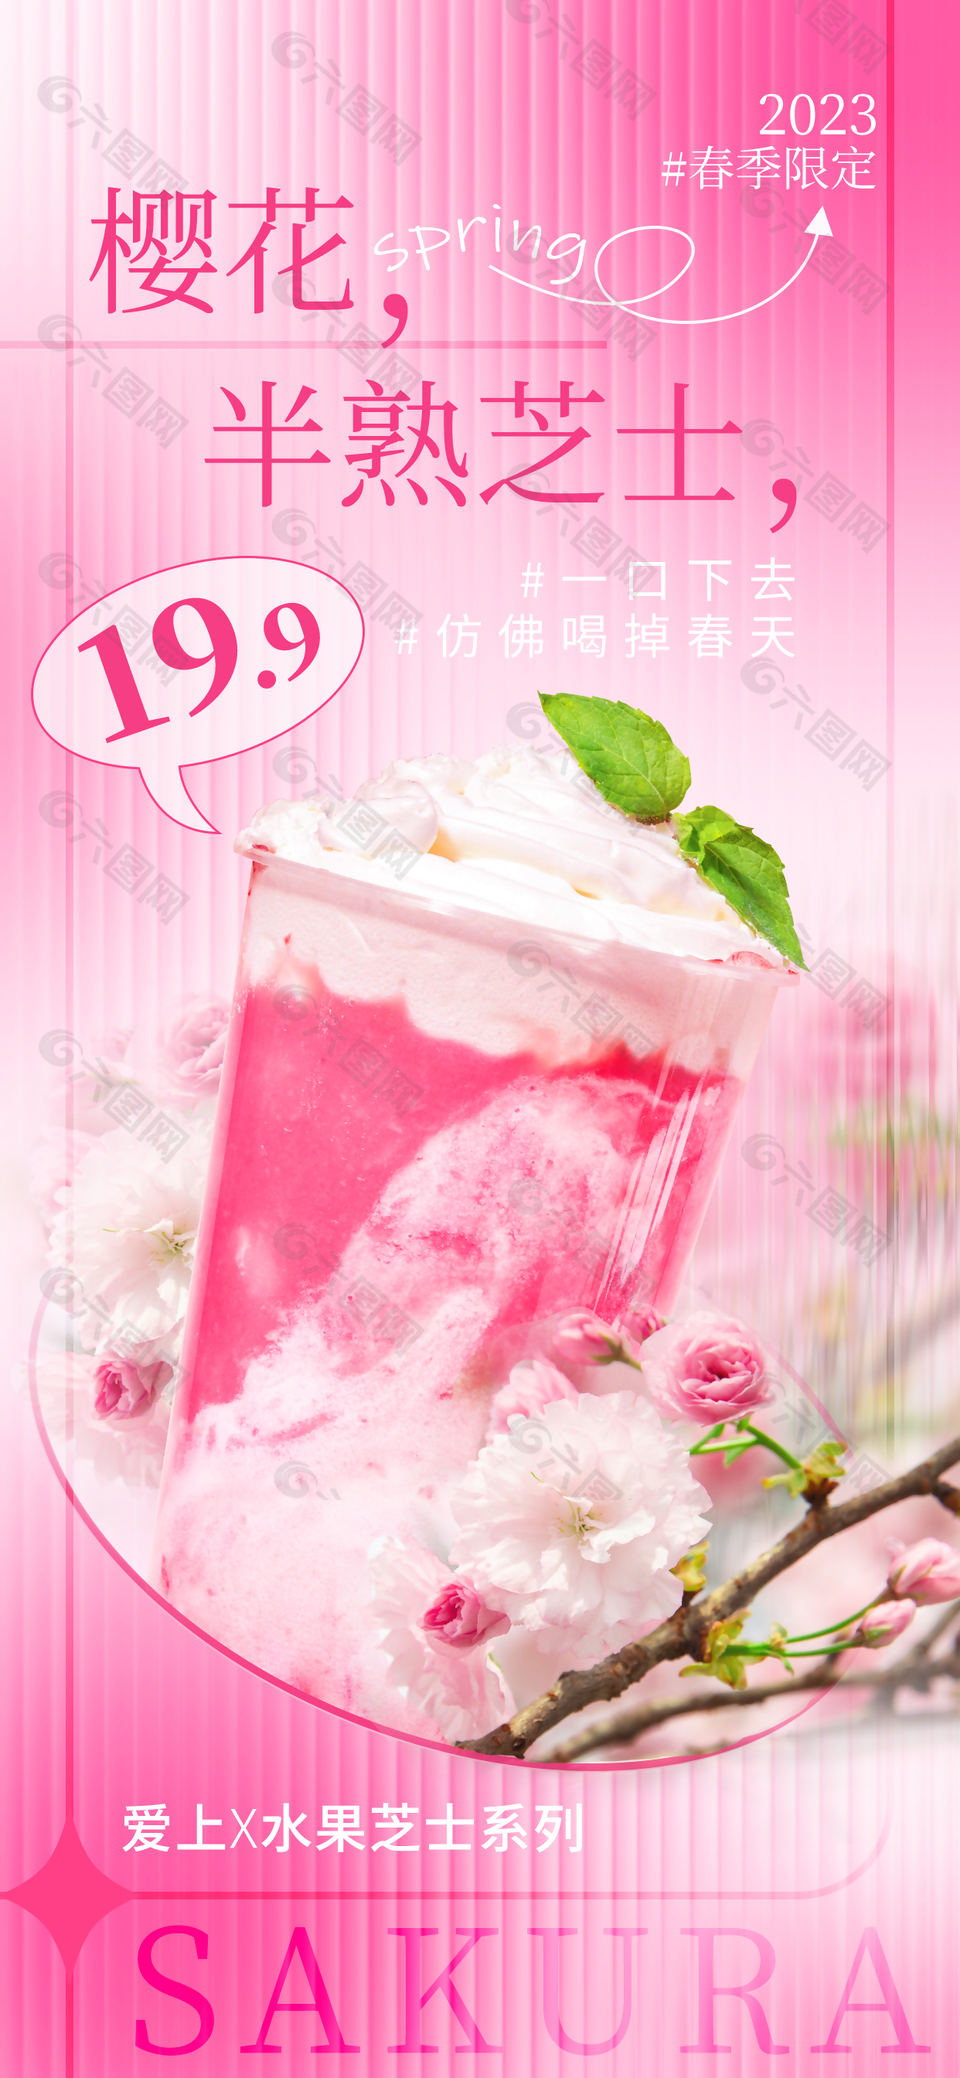 樱花芝士奶茶创意推广海报模板